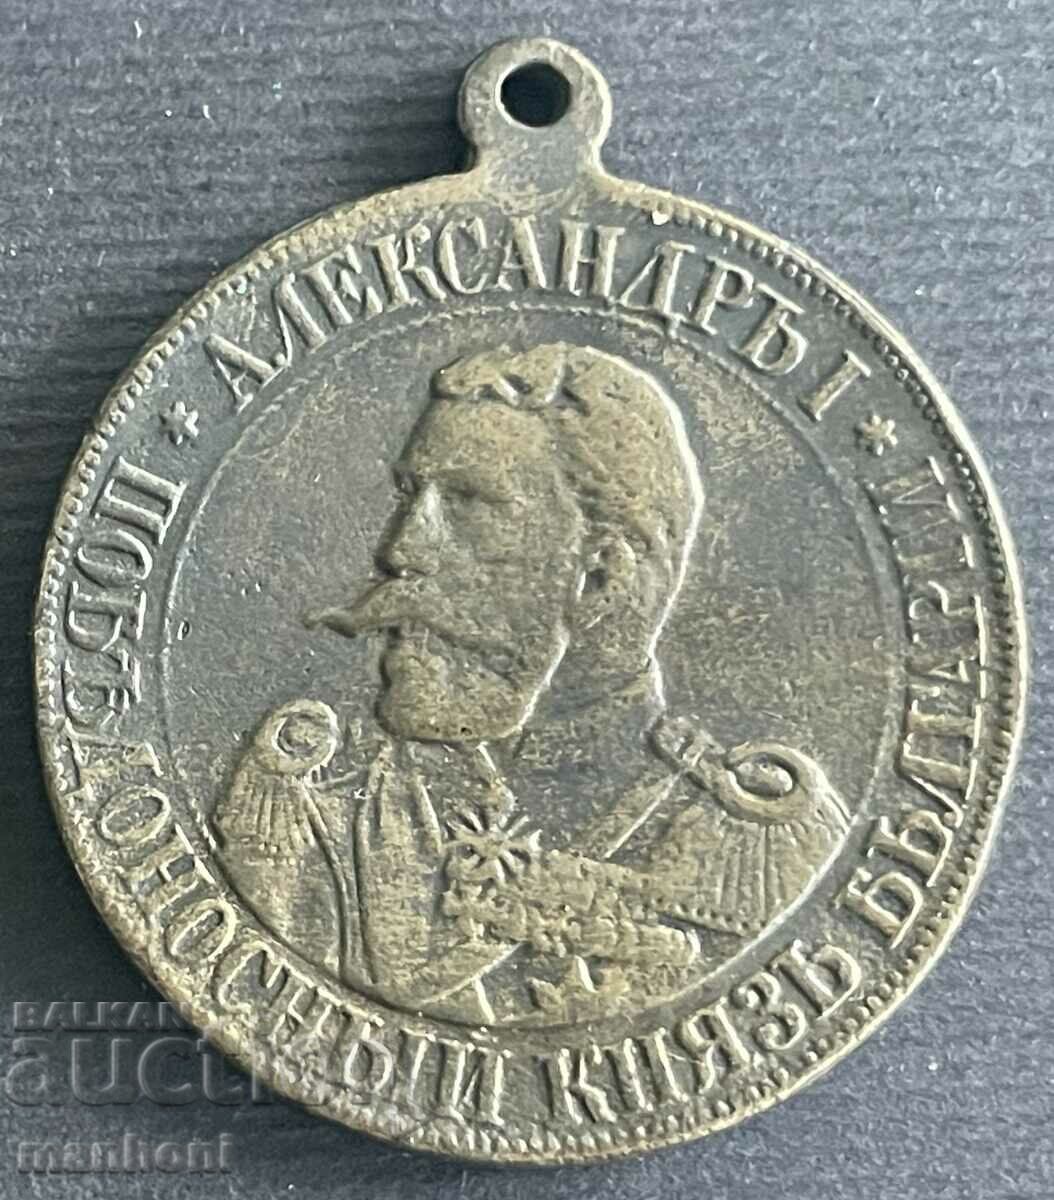 5544 Medalia Principatului Bulgariei Prințul Battenberg 1886.